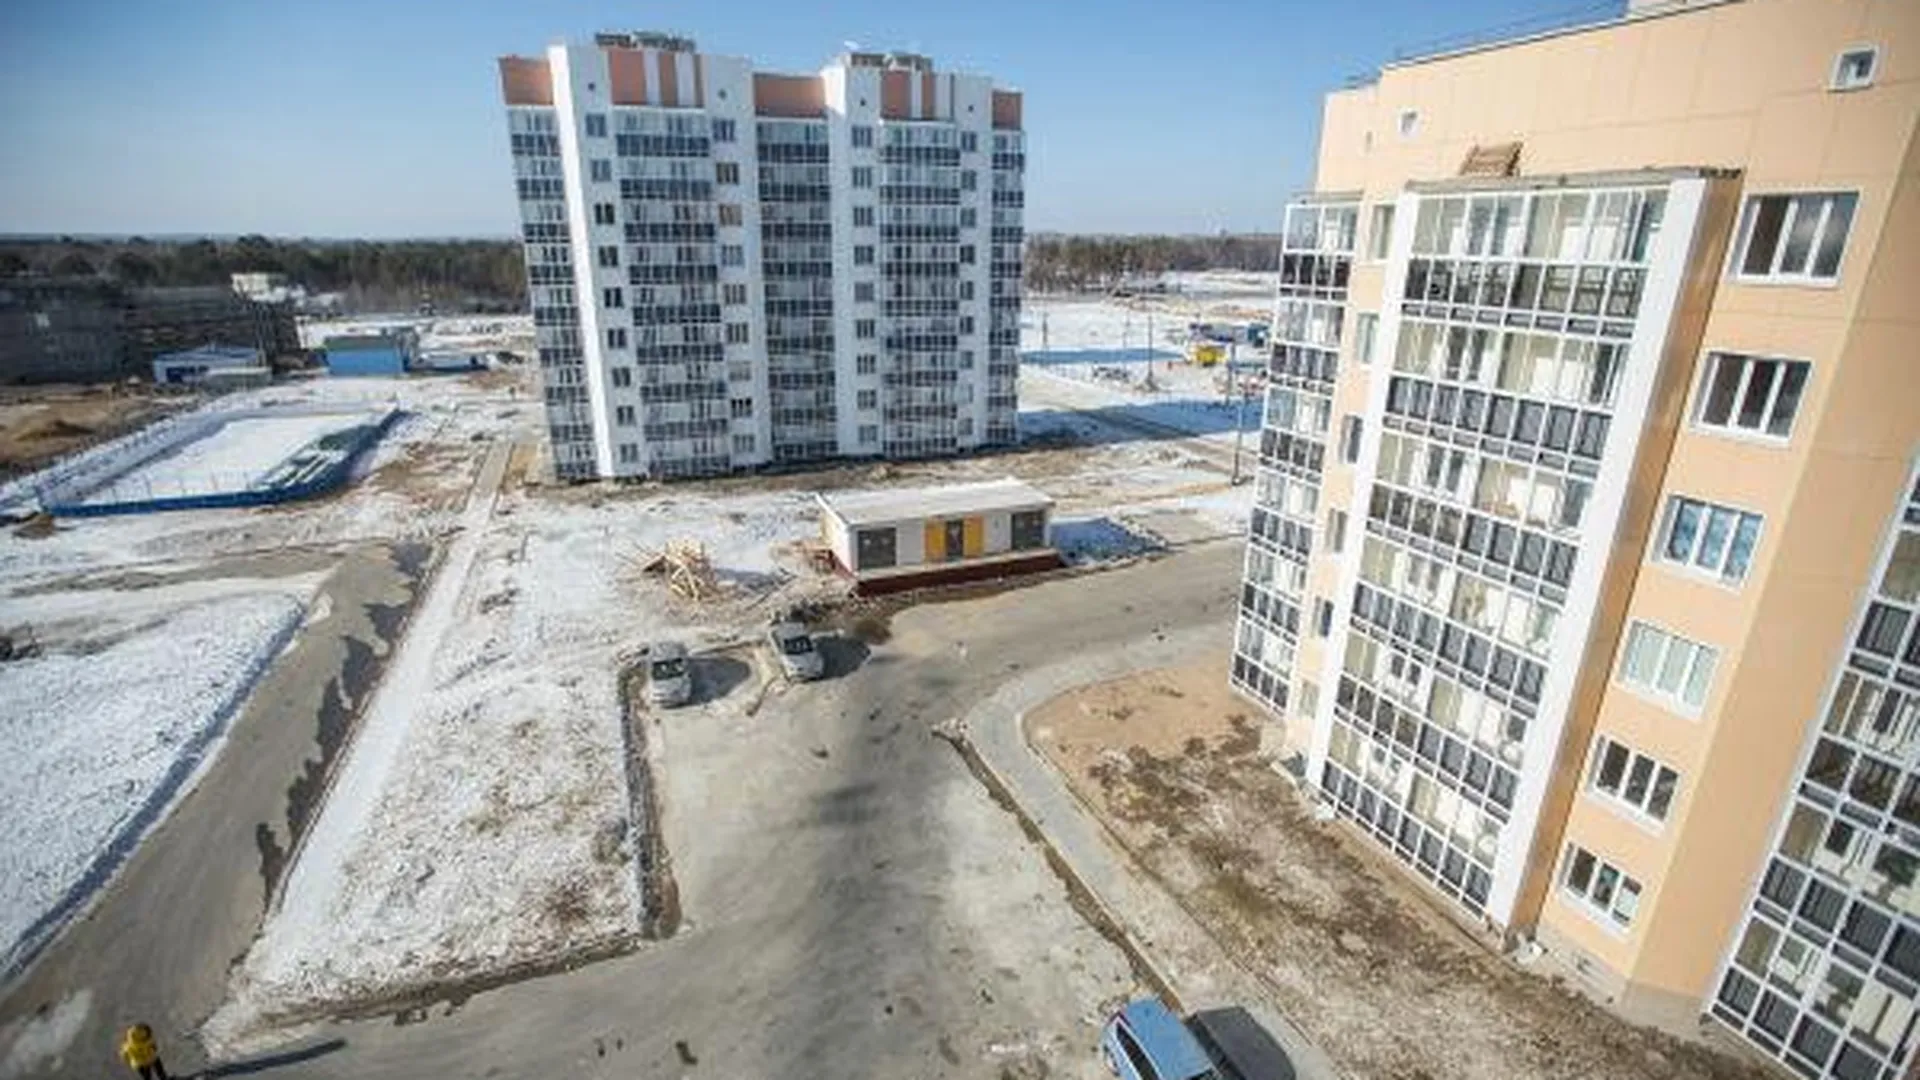 Рейтинг девелоперов по выводу в продажу новых объемов жилья представили в Подмосковье